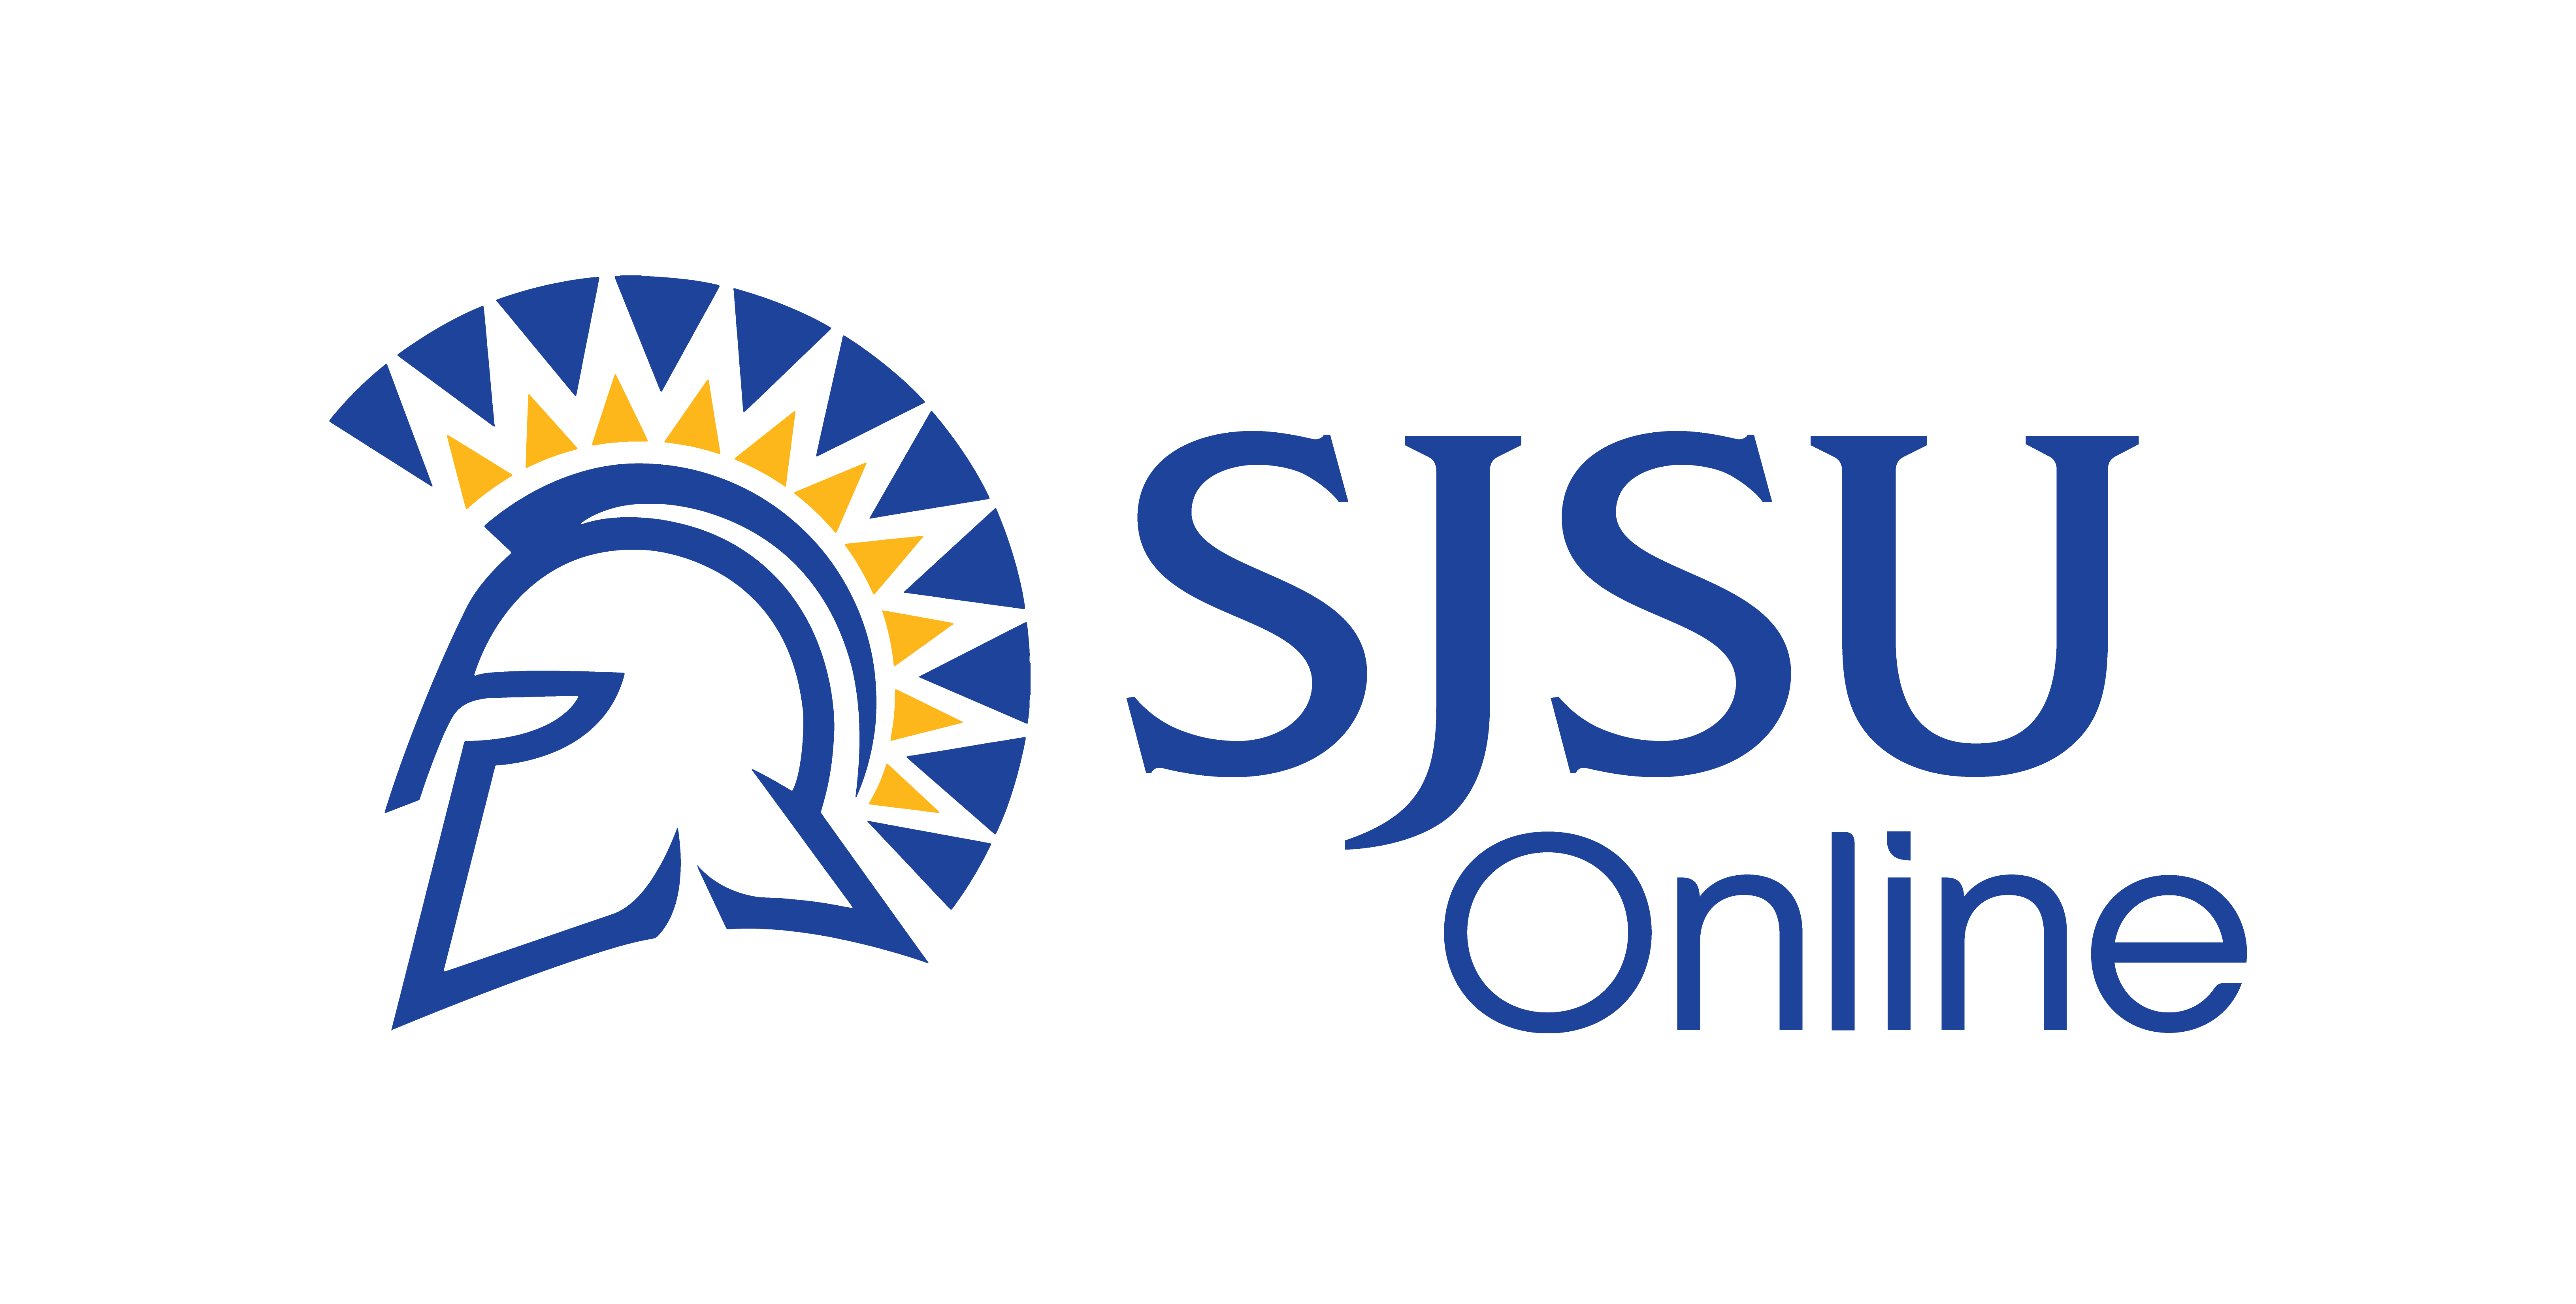 SJSU Online Brand University Marketing and Communications